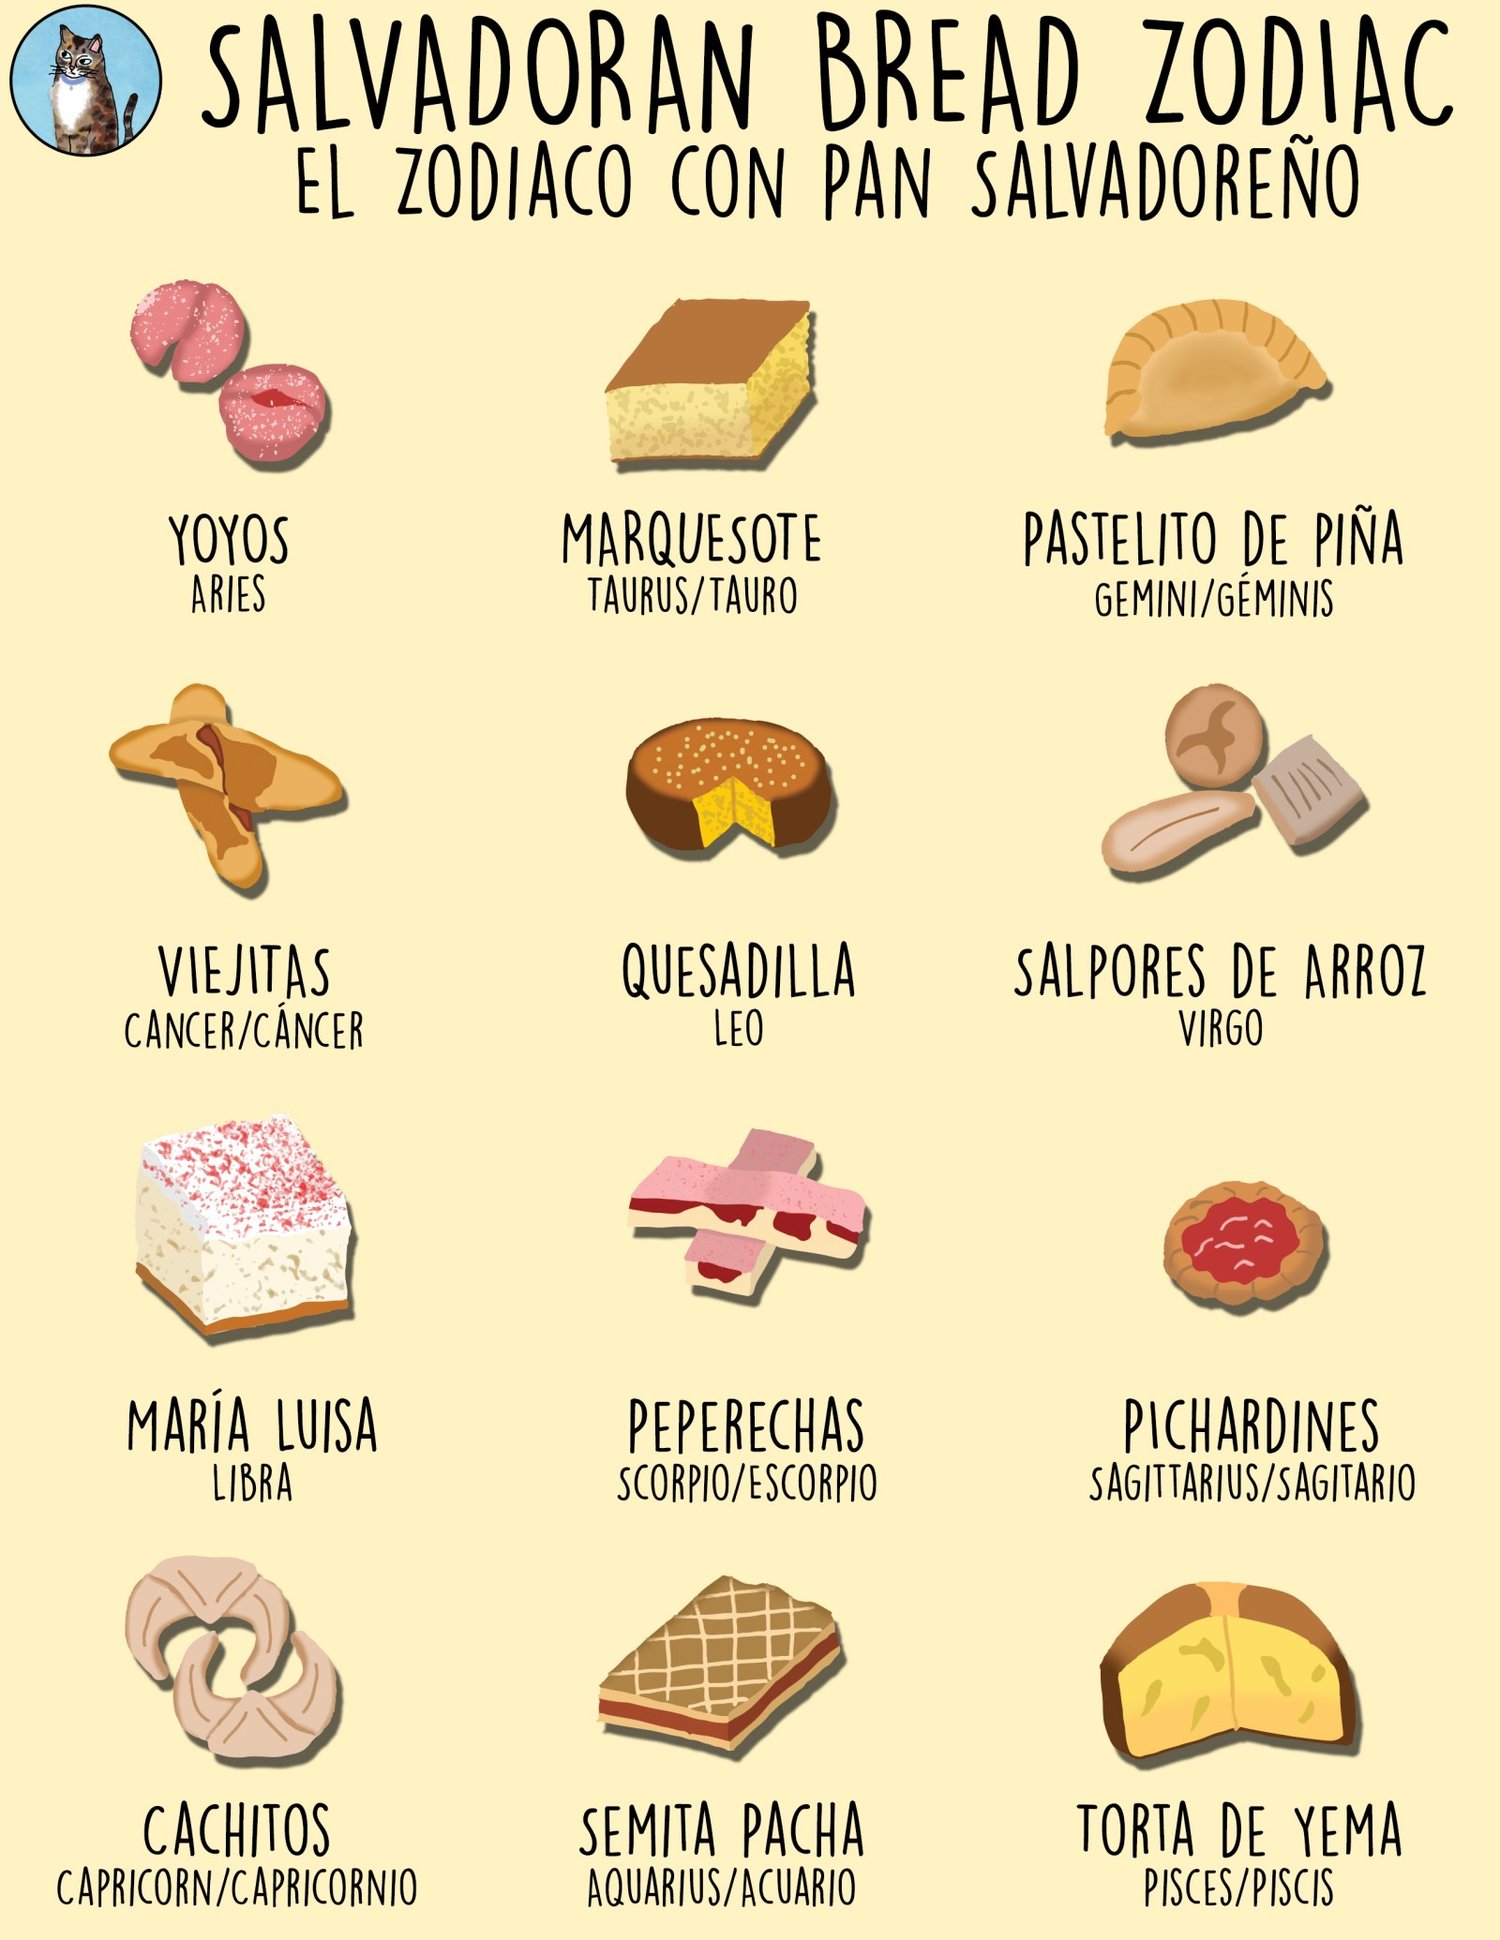 Image of Salvadoran Bread Zodiac